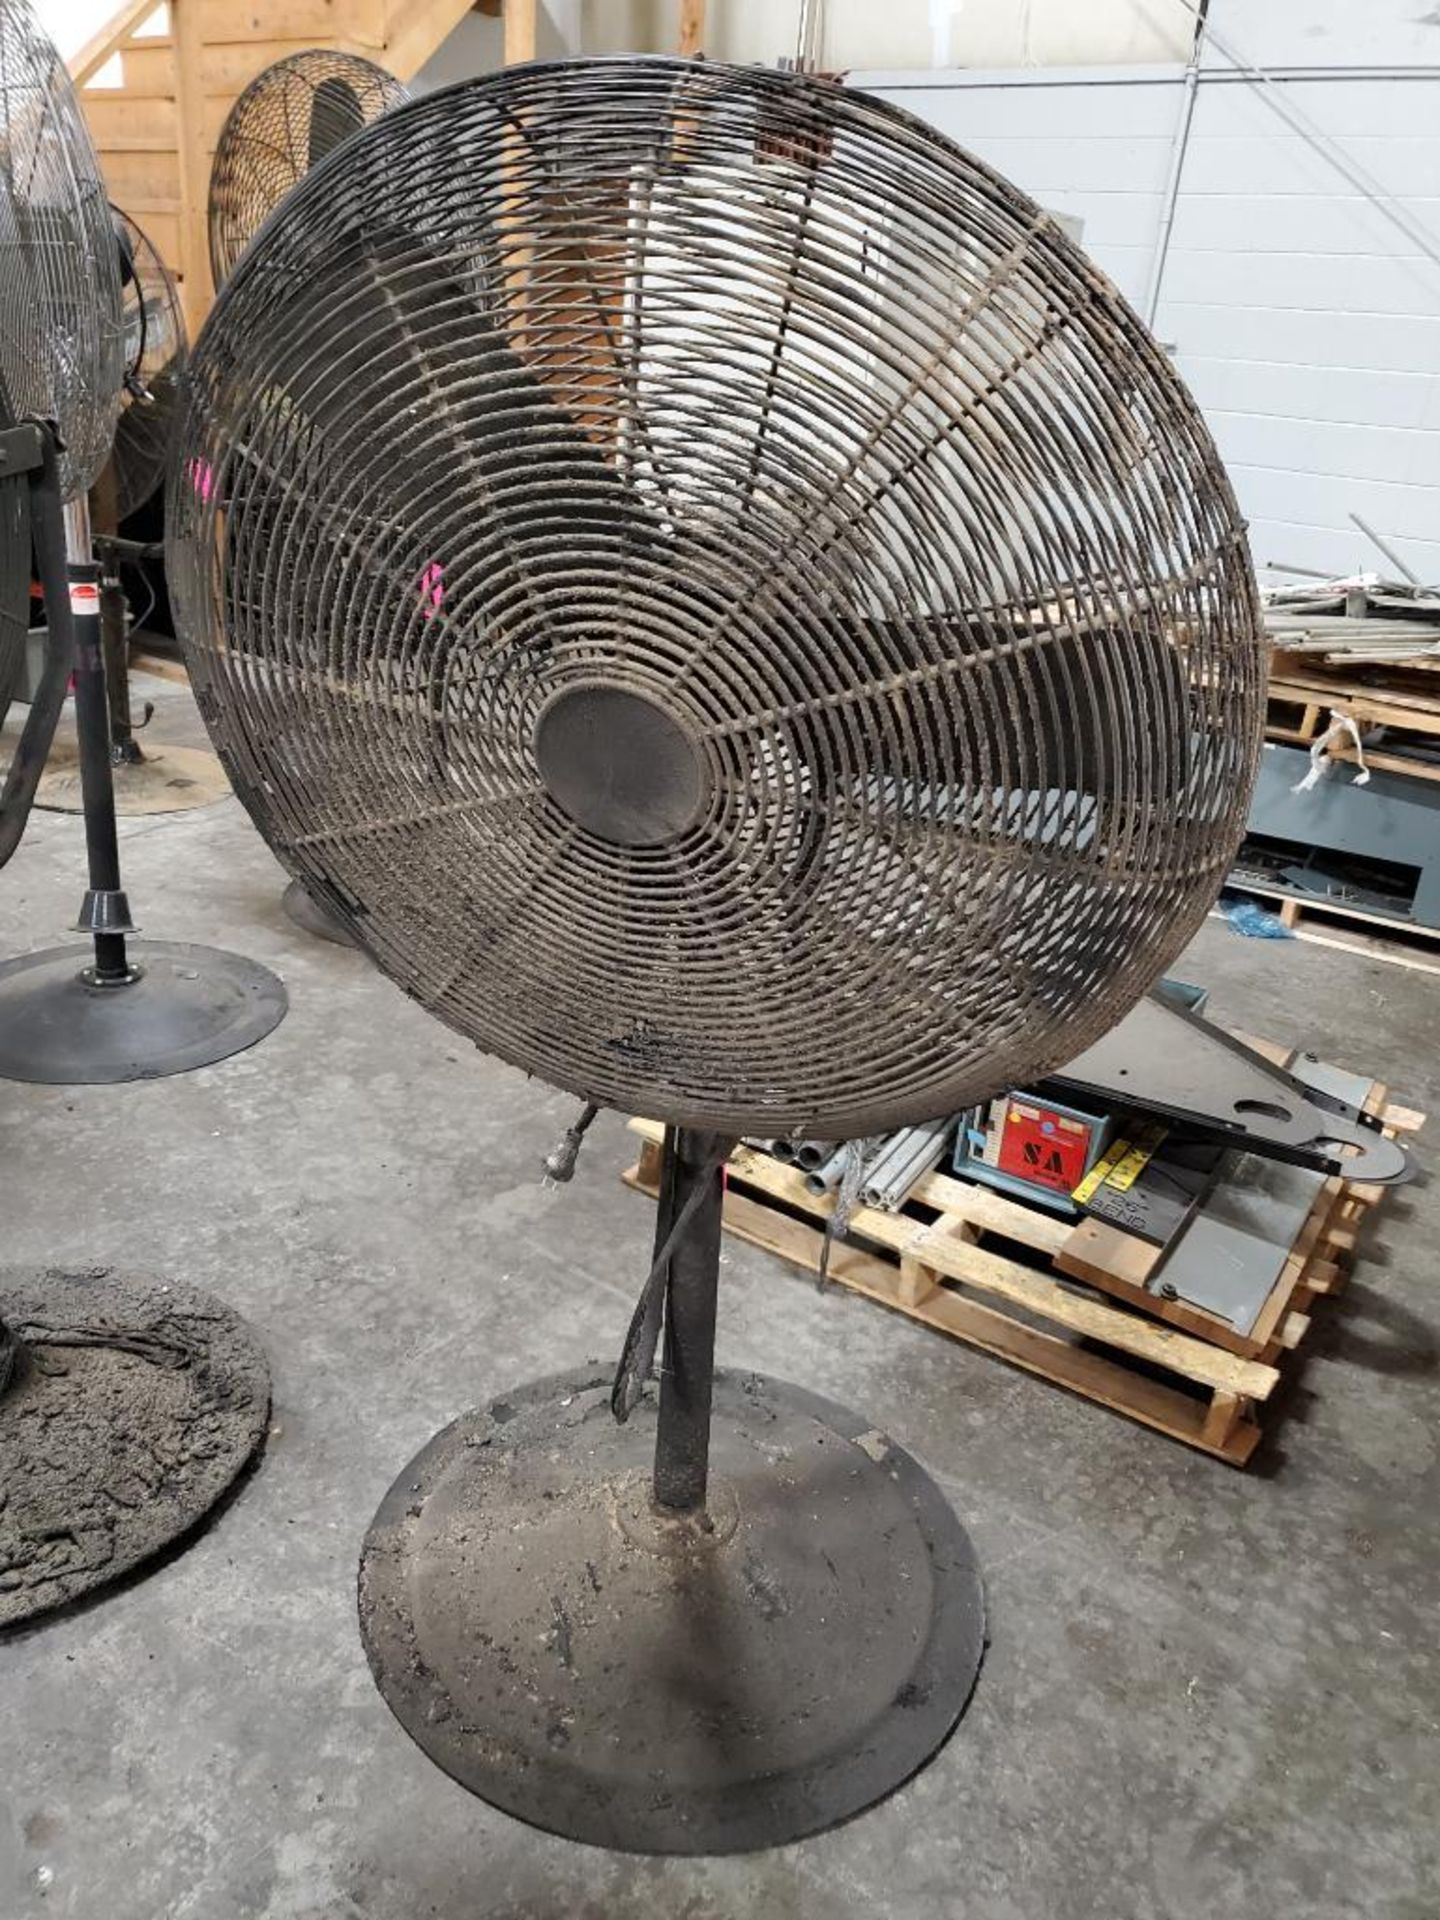 30in pedestal fan. 120v single phase.